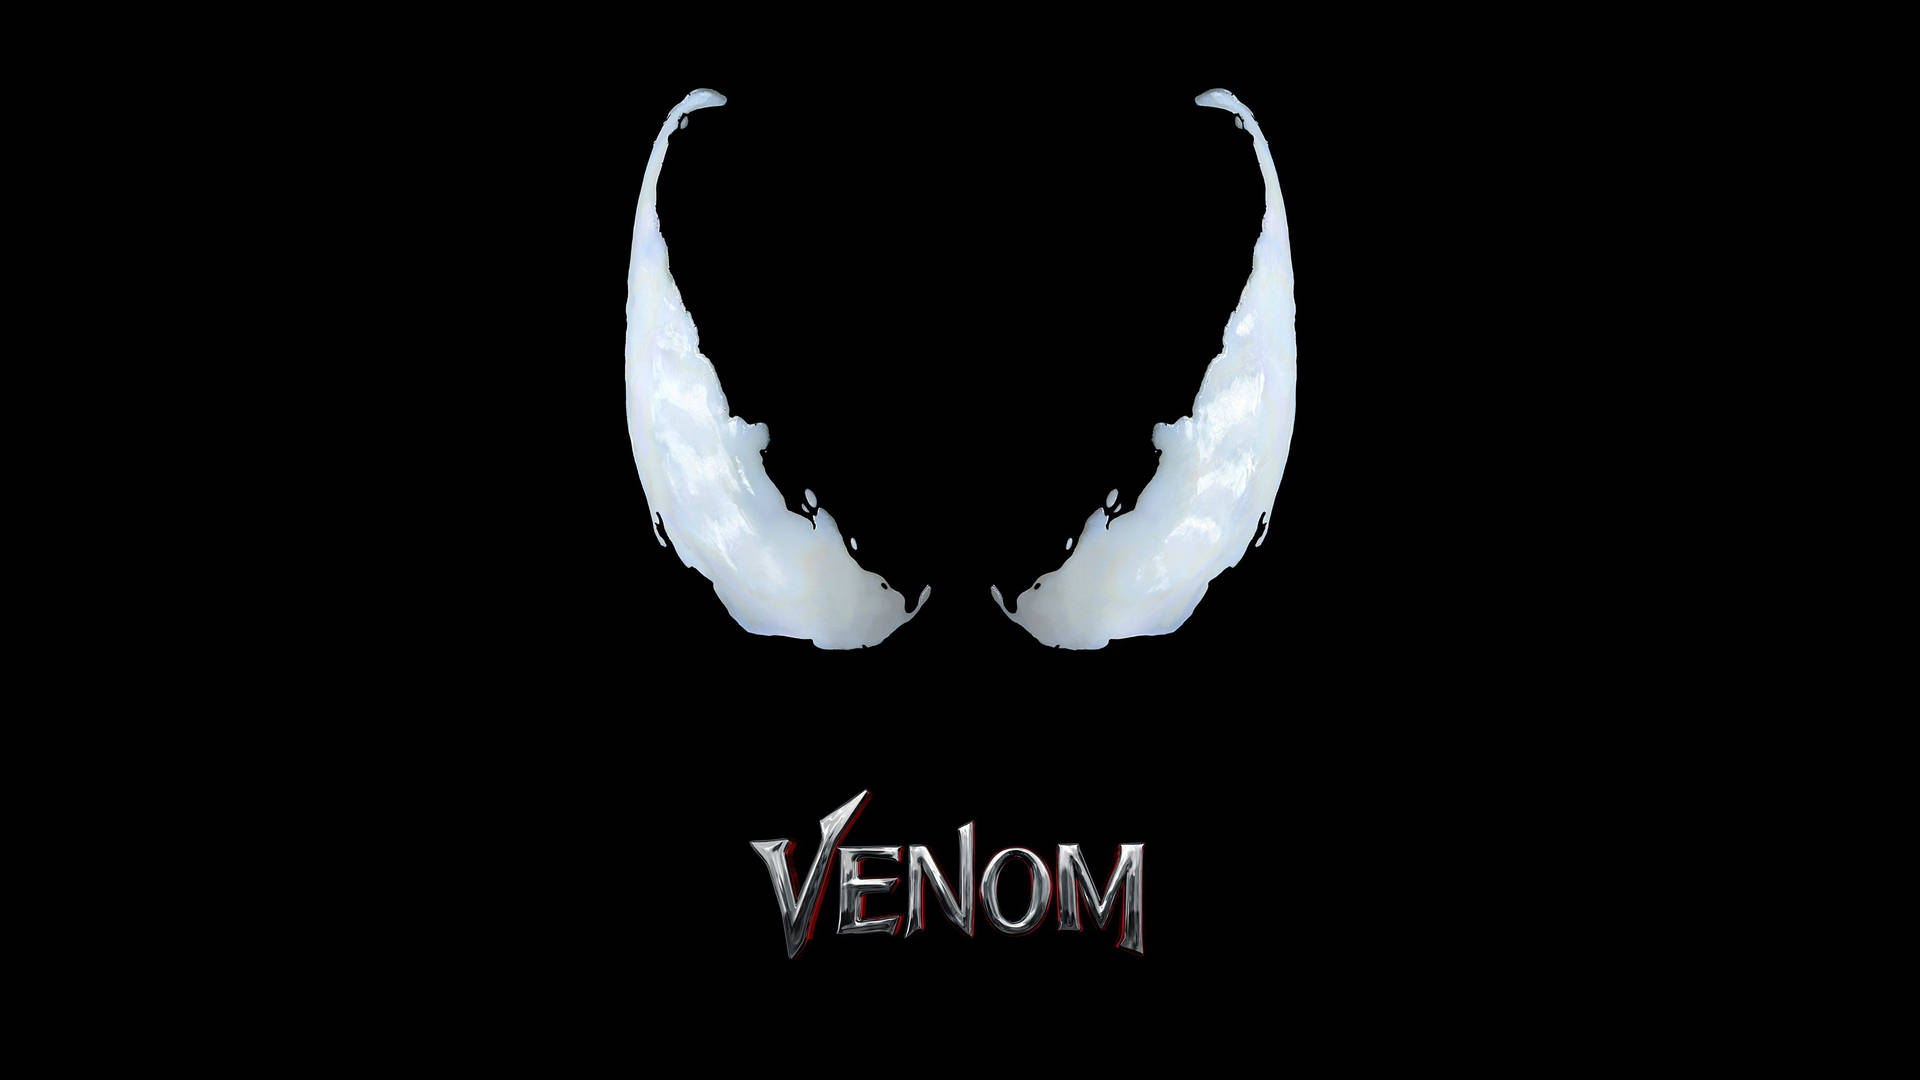 Títuloestilizado Do Filme Venom Para Papel De Parede De Computador Ou Celular. Papel de Parede